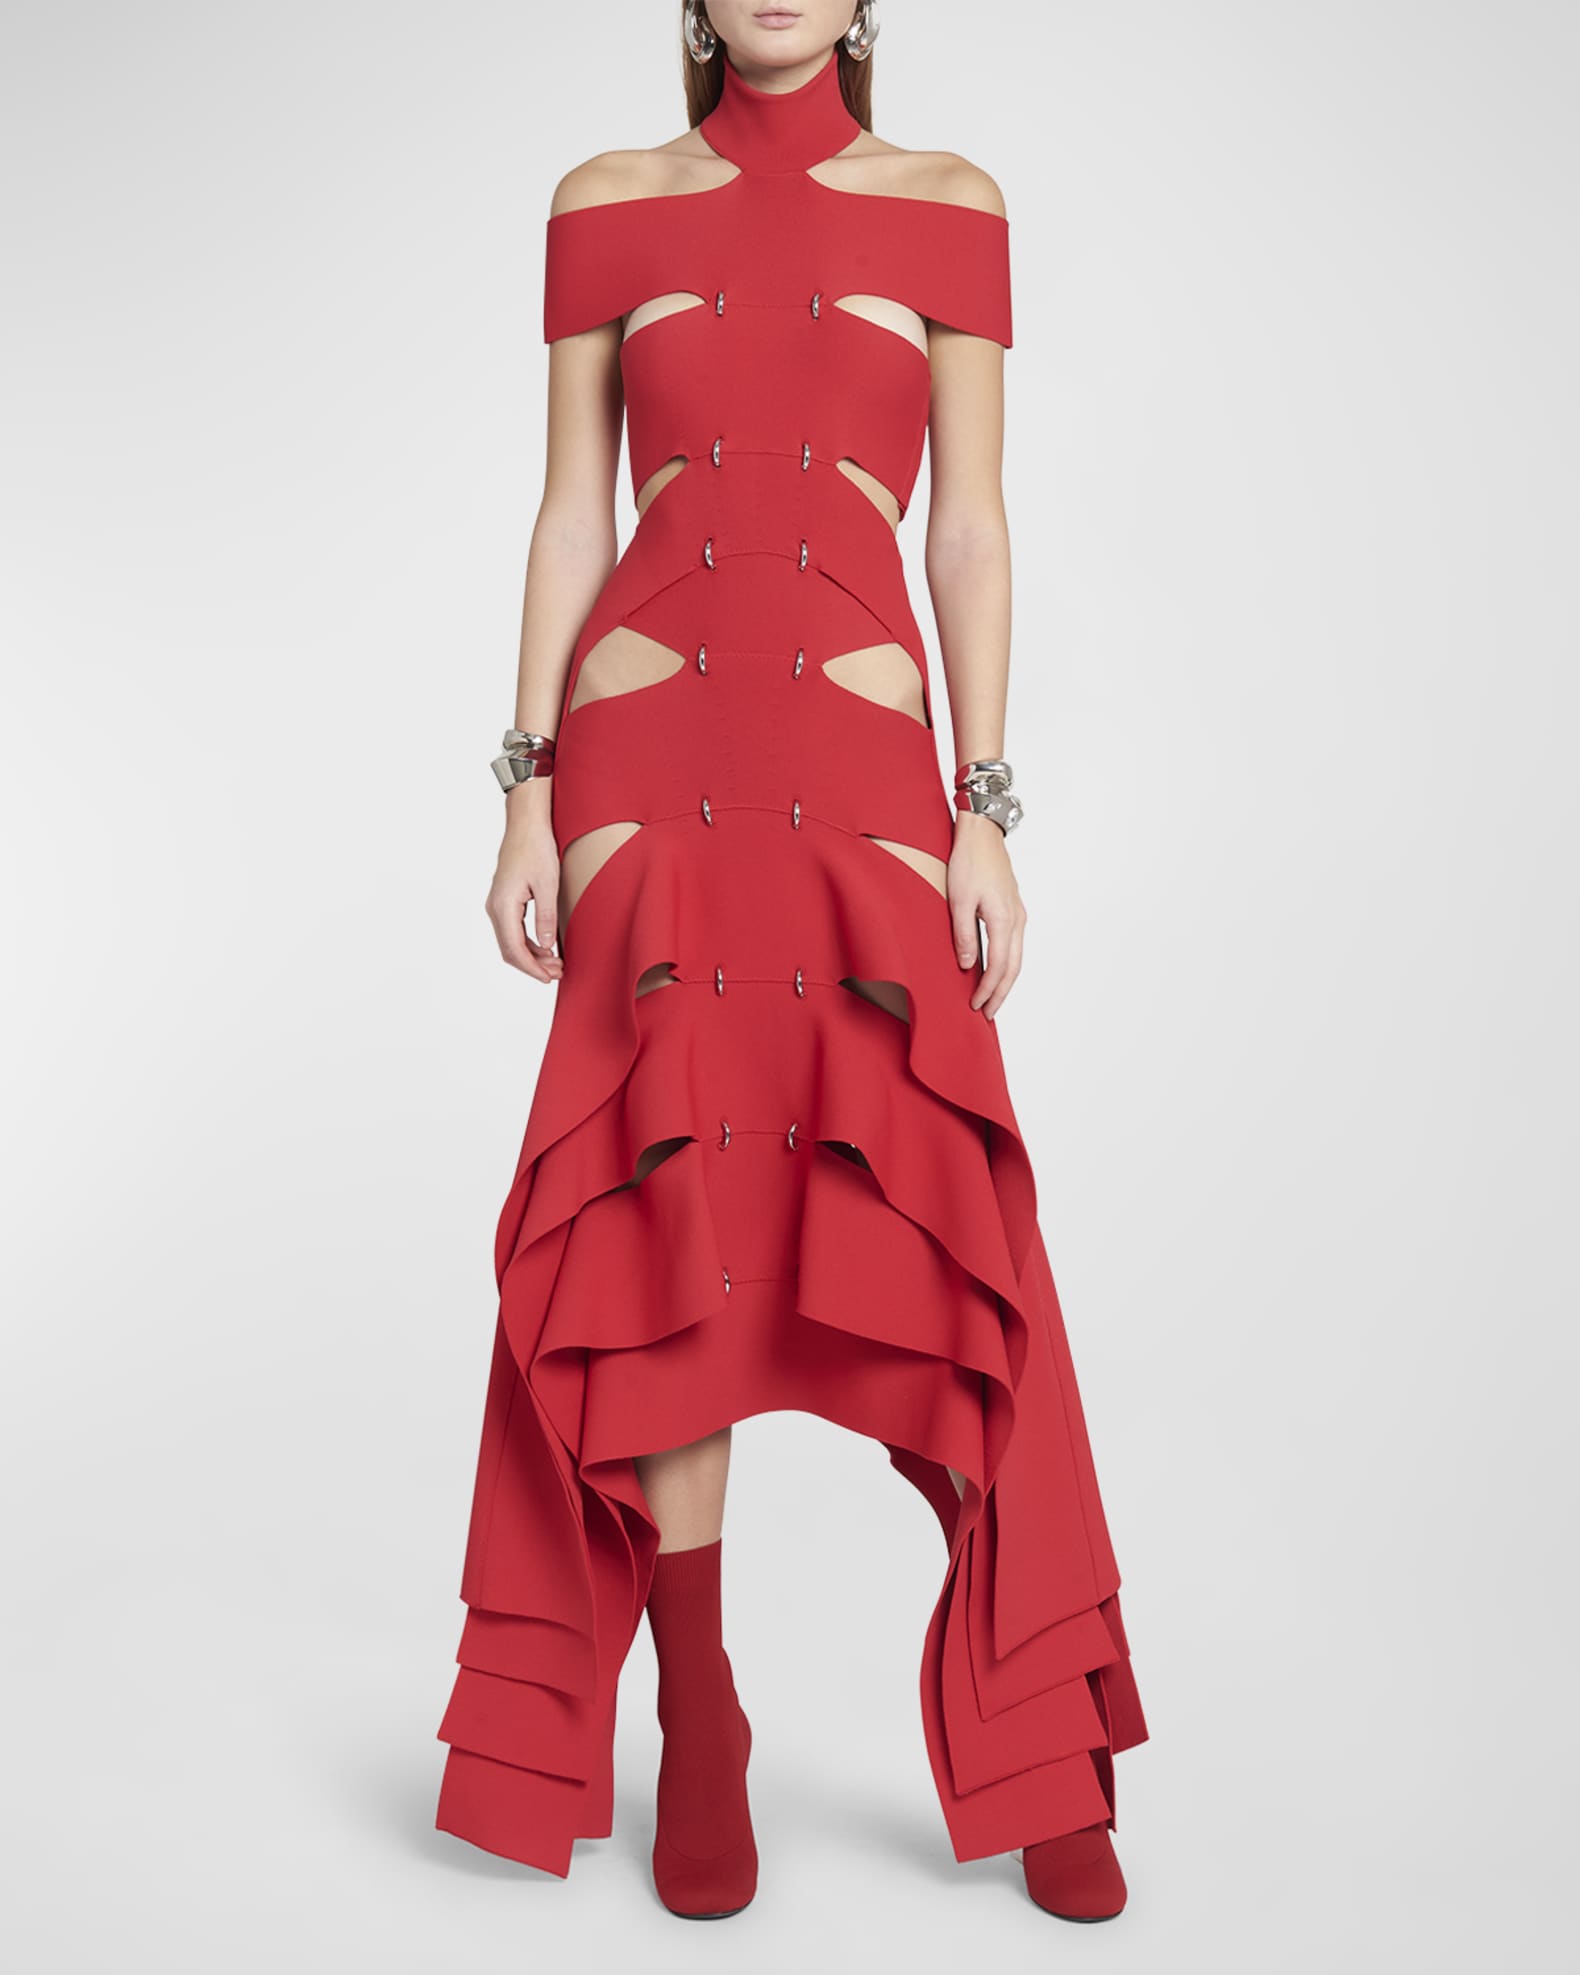 Alexander McQueen rainbow dress from Fashion Designer